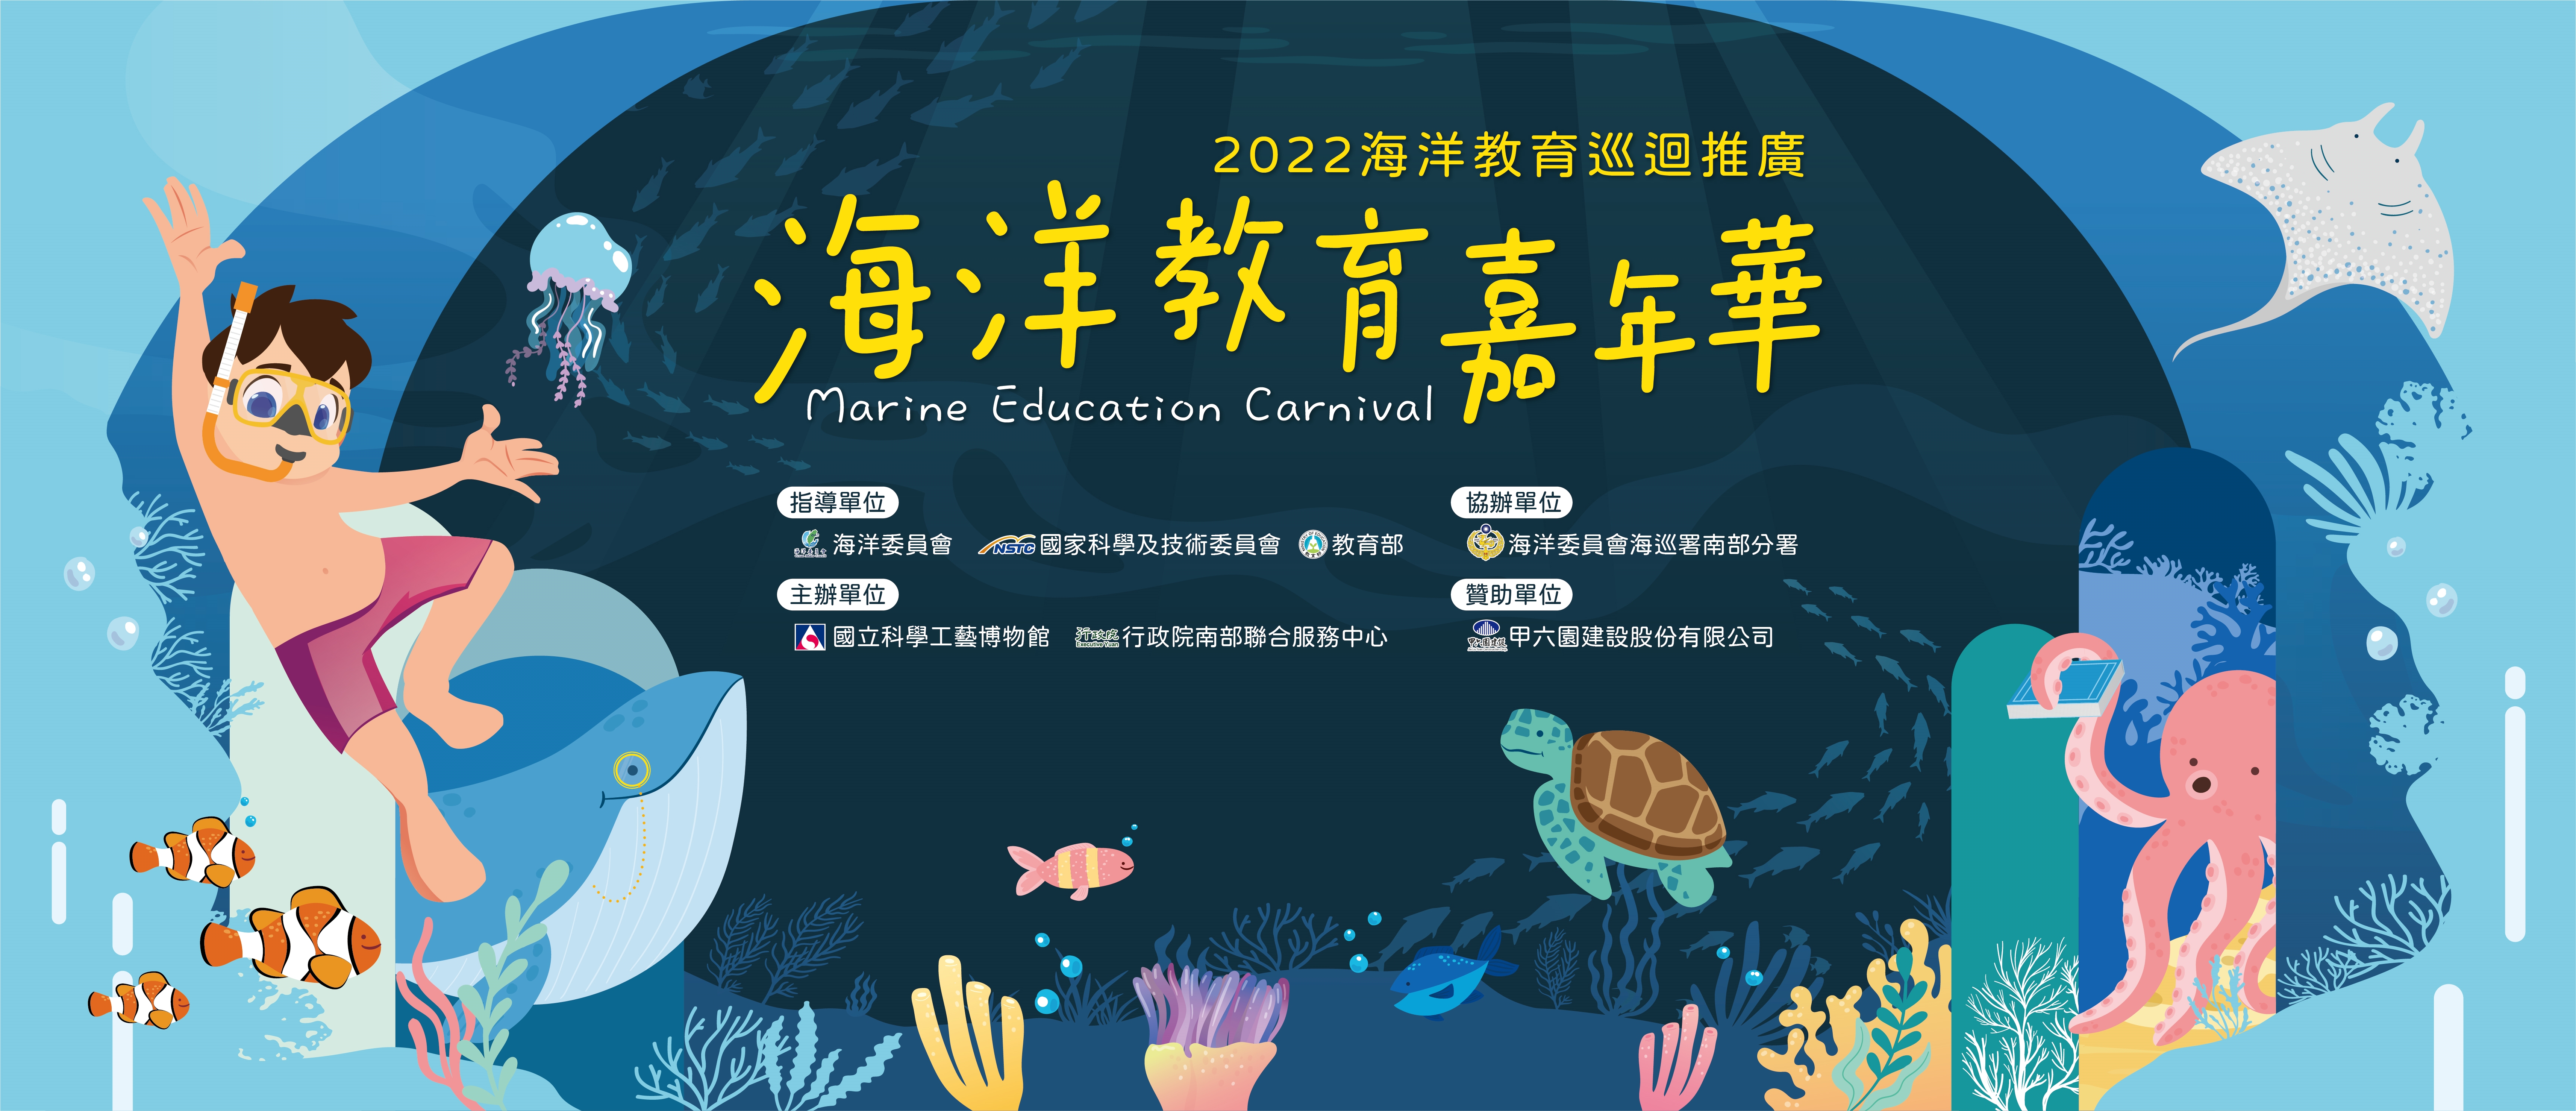 海洋教育嘉年華宣傳用圖片/海報